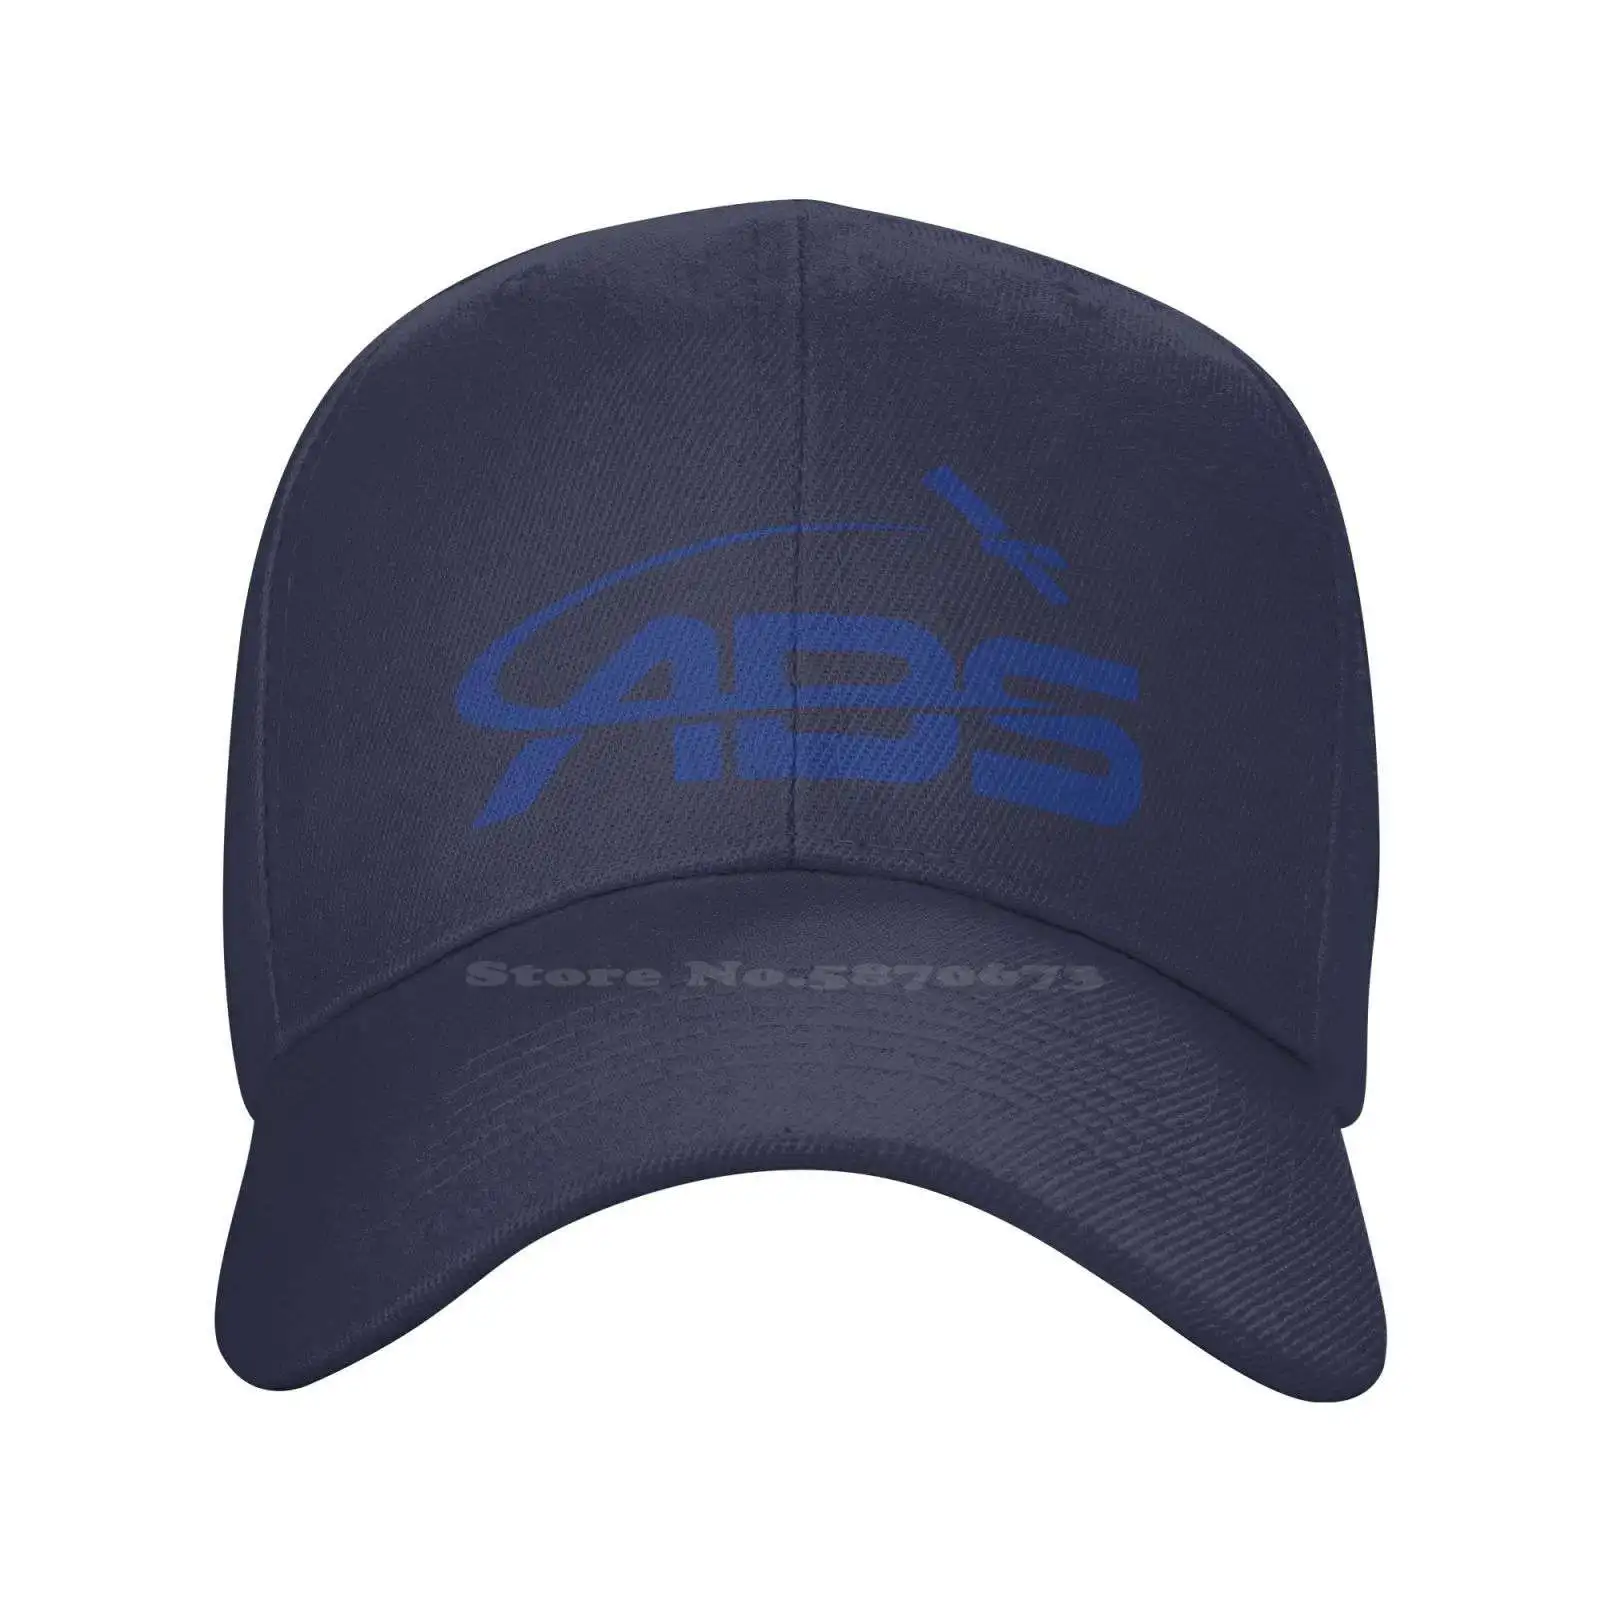 Asia Broadcast Satellite Графическая печать логотипа Повседневная Джинсовая кепка Вязаная шапка Бейсболка